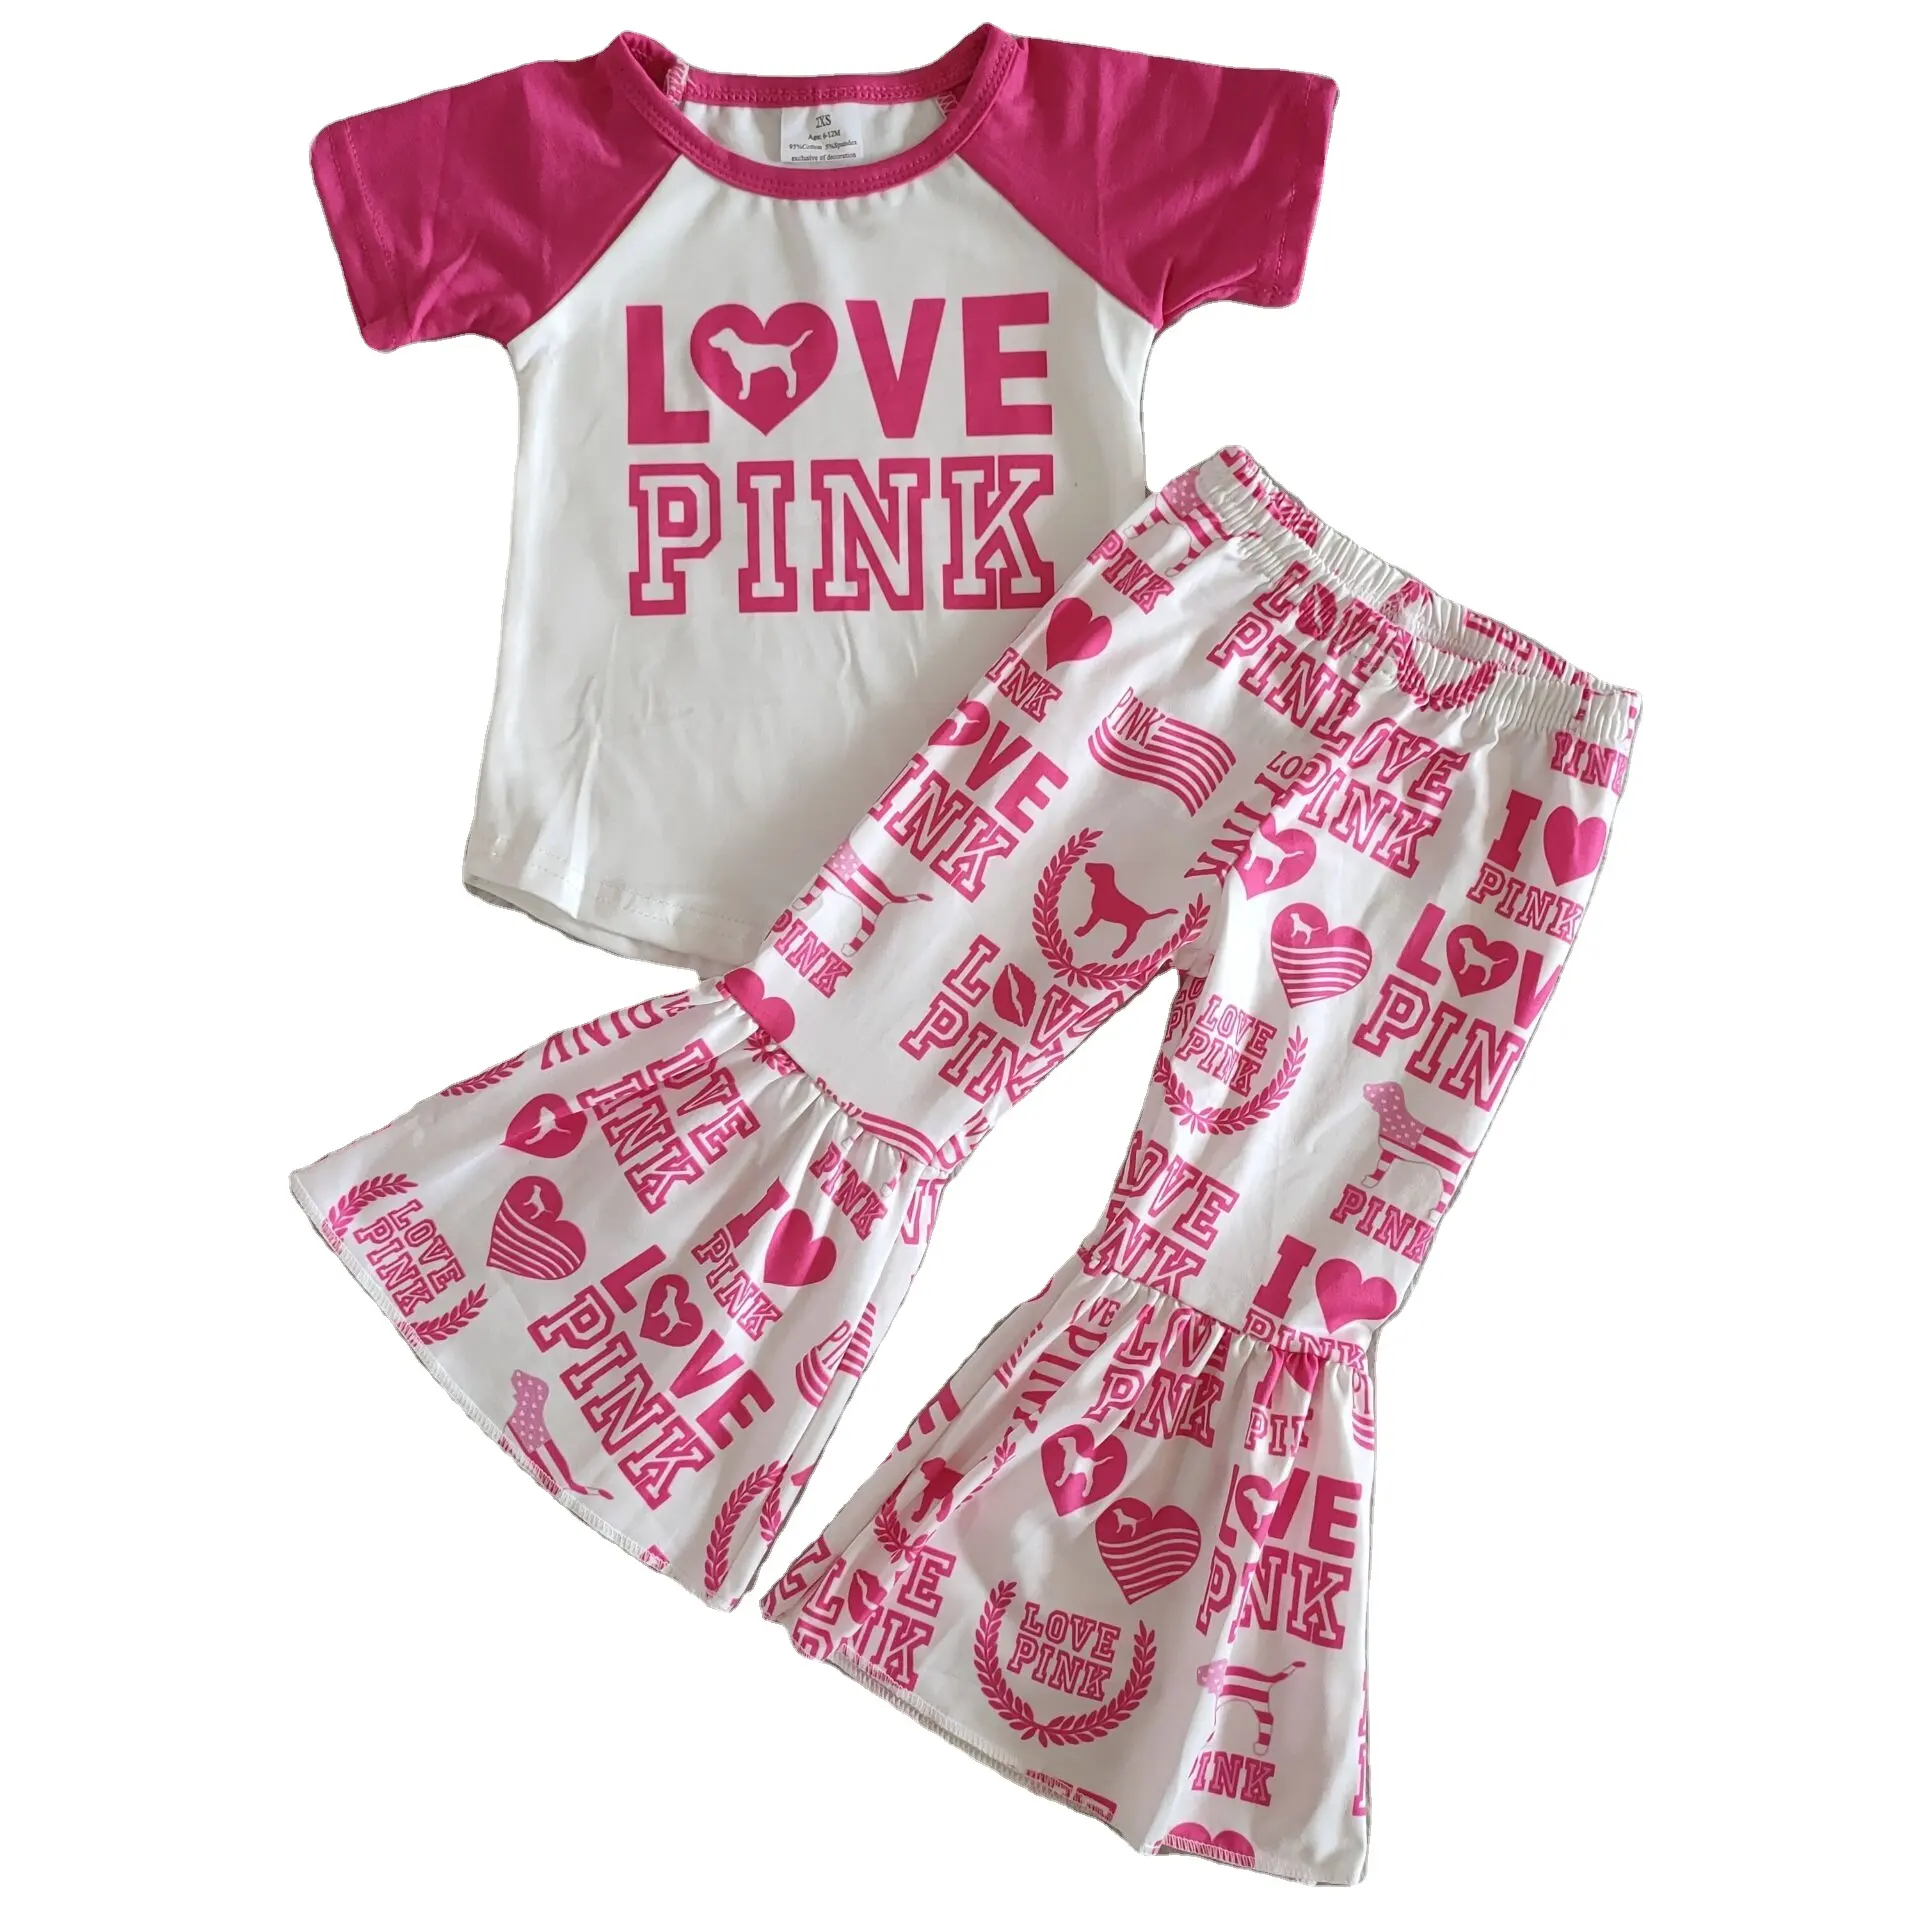 Оптовая продажа, одежда для маленьких девочек с надписью love, розовый однотонный топ реглан с коротким/длинным рукавом, штаны с надписью Love Dog